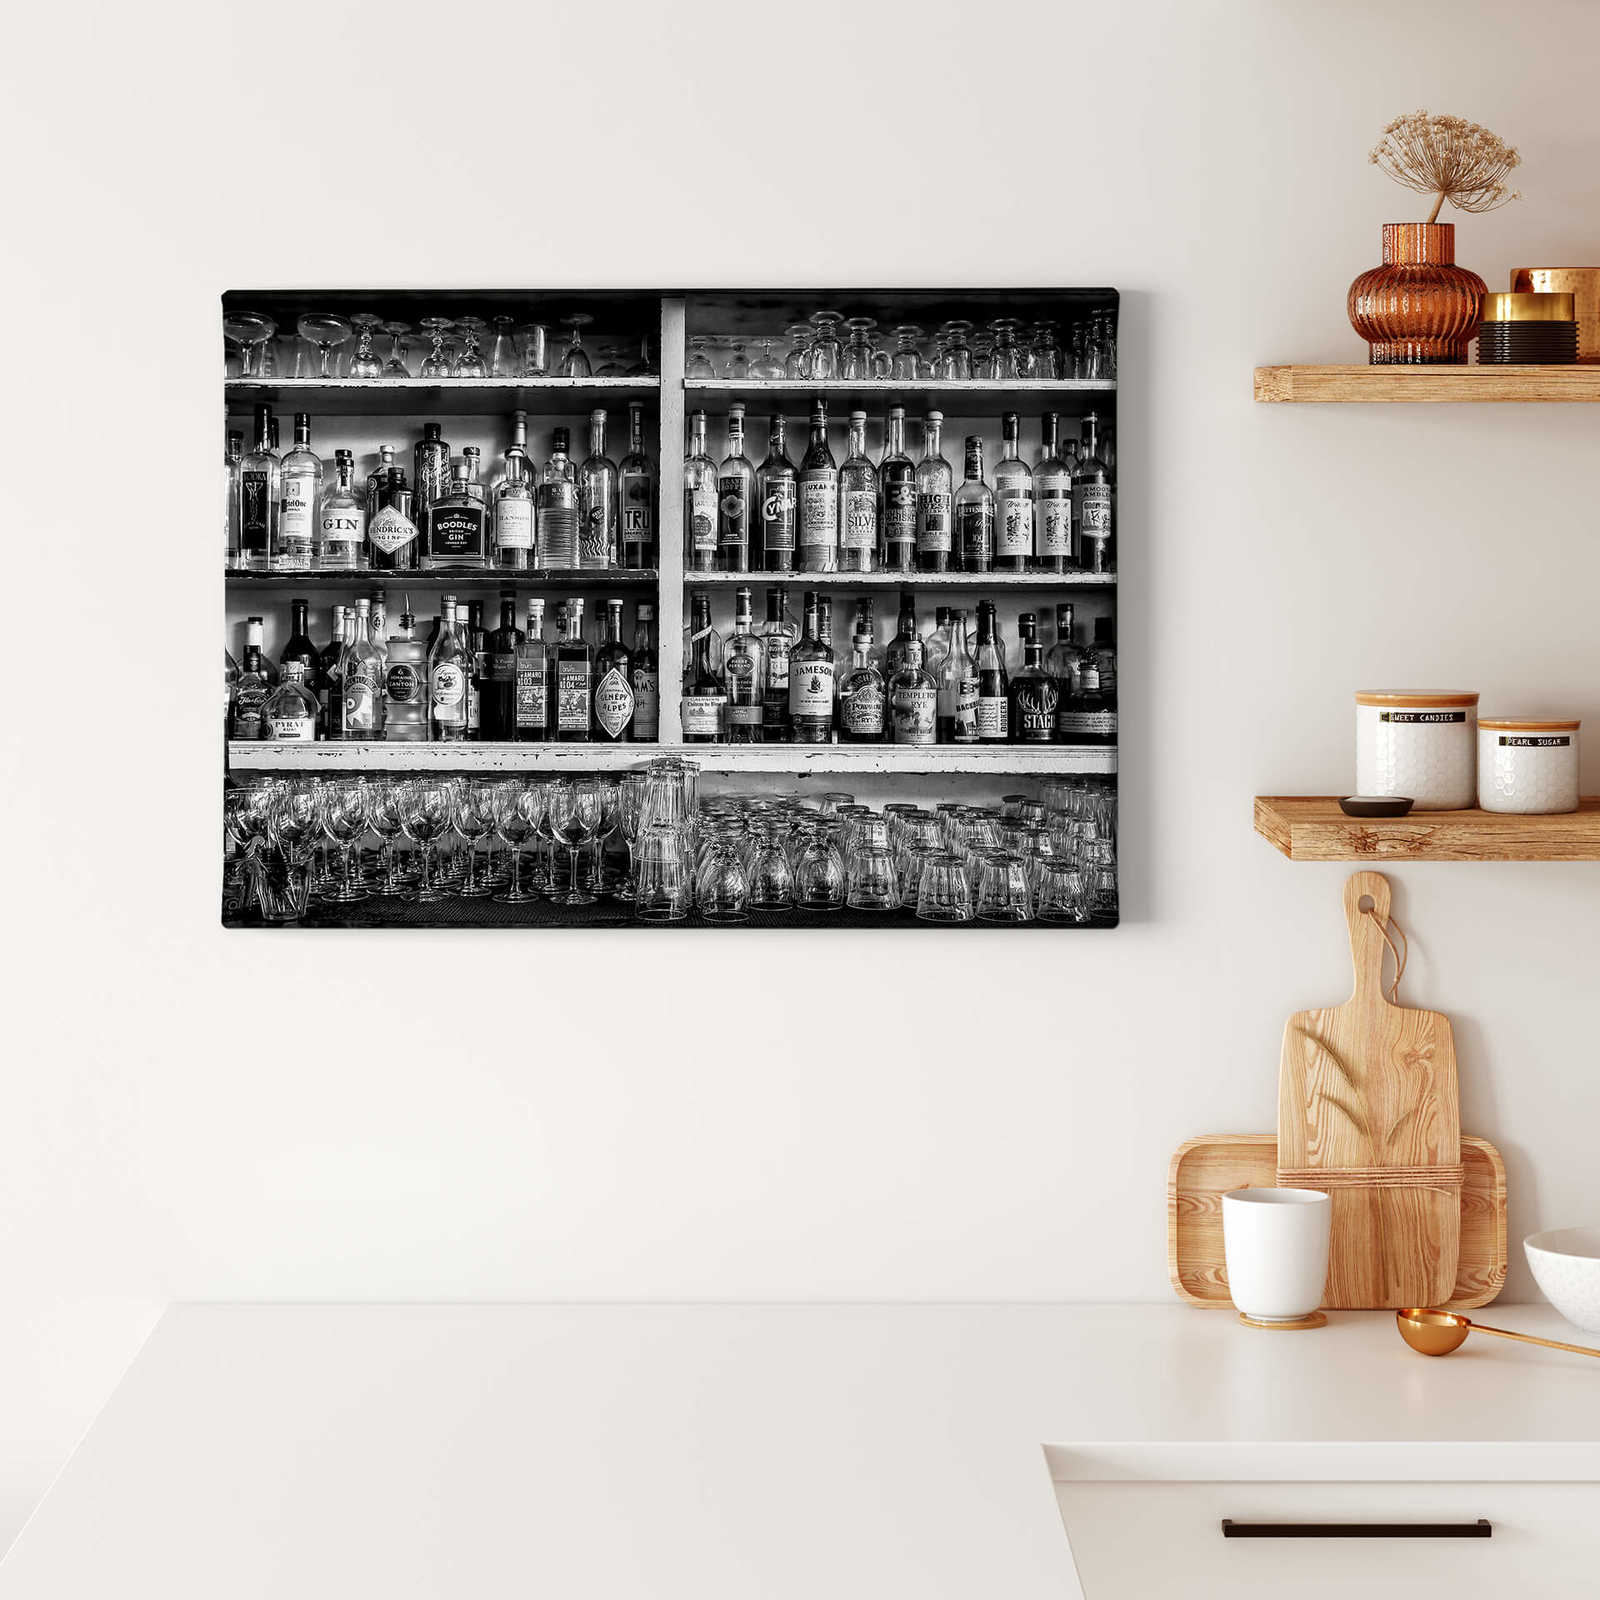             Lienzo blanco y negro Pintura Bar con botellas y vasos - 0,70 m x 0,50 m
        